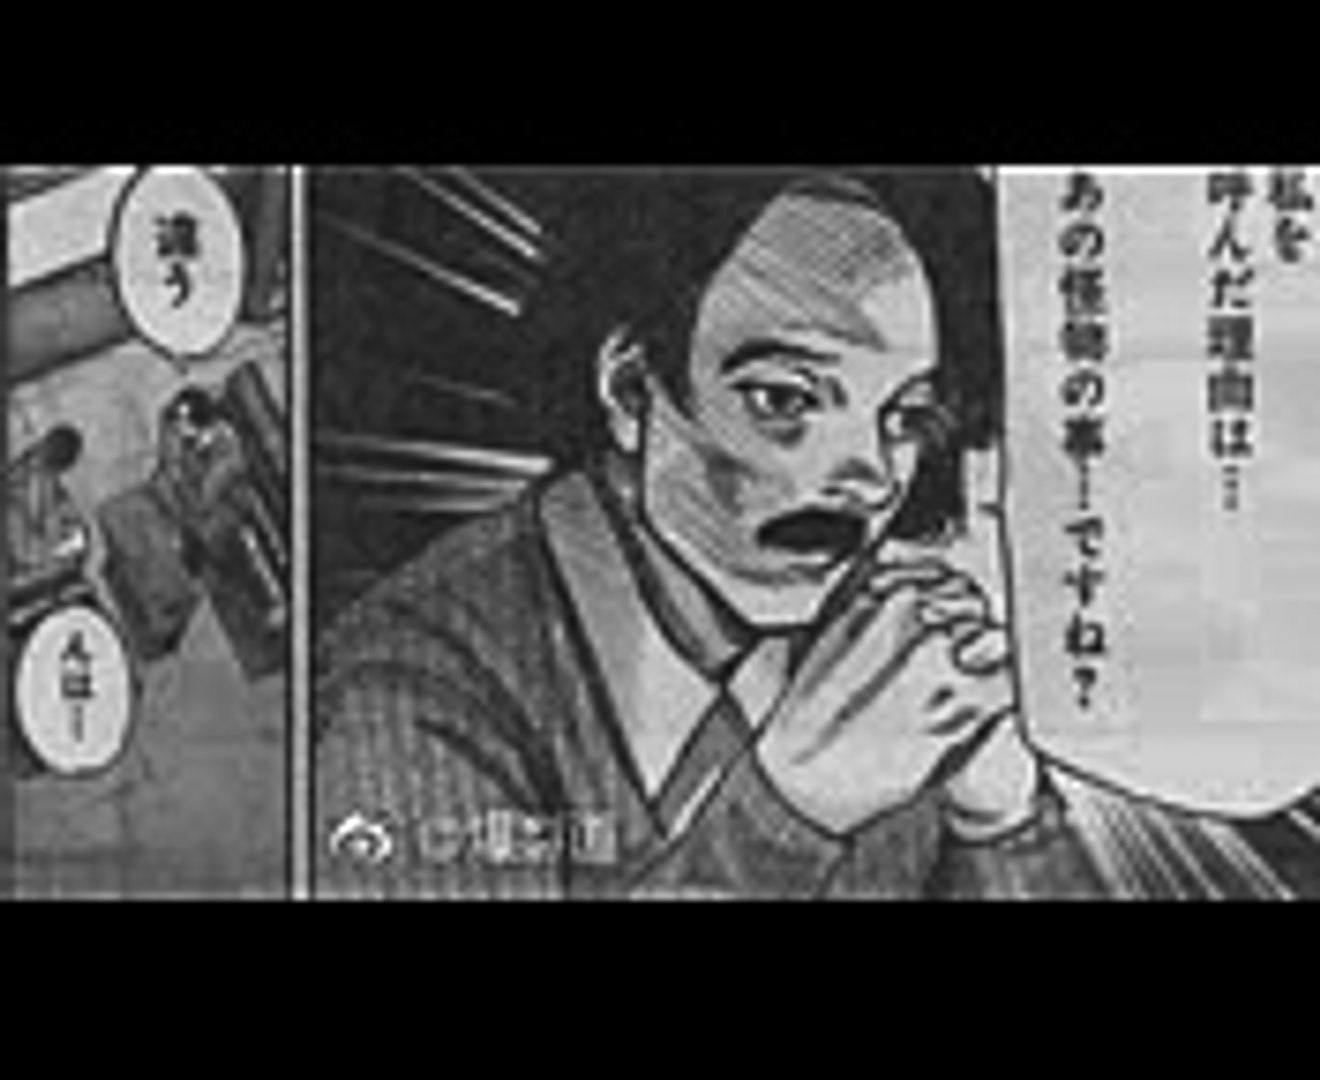 東京喰種re 148 Tokyo Ghoulre 148 1 Video Dailymotion